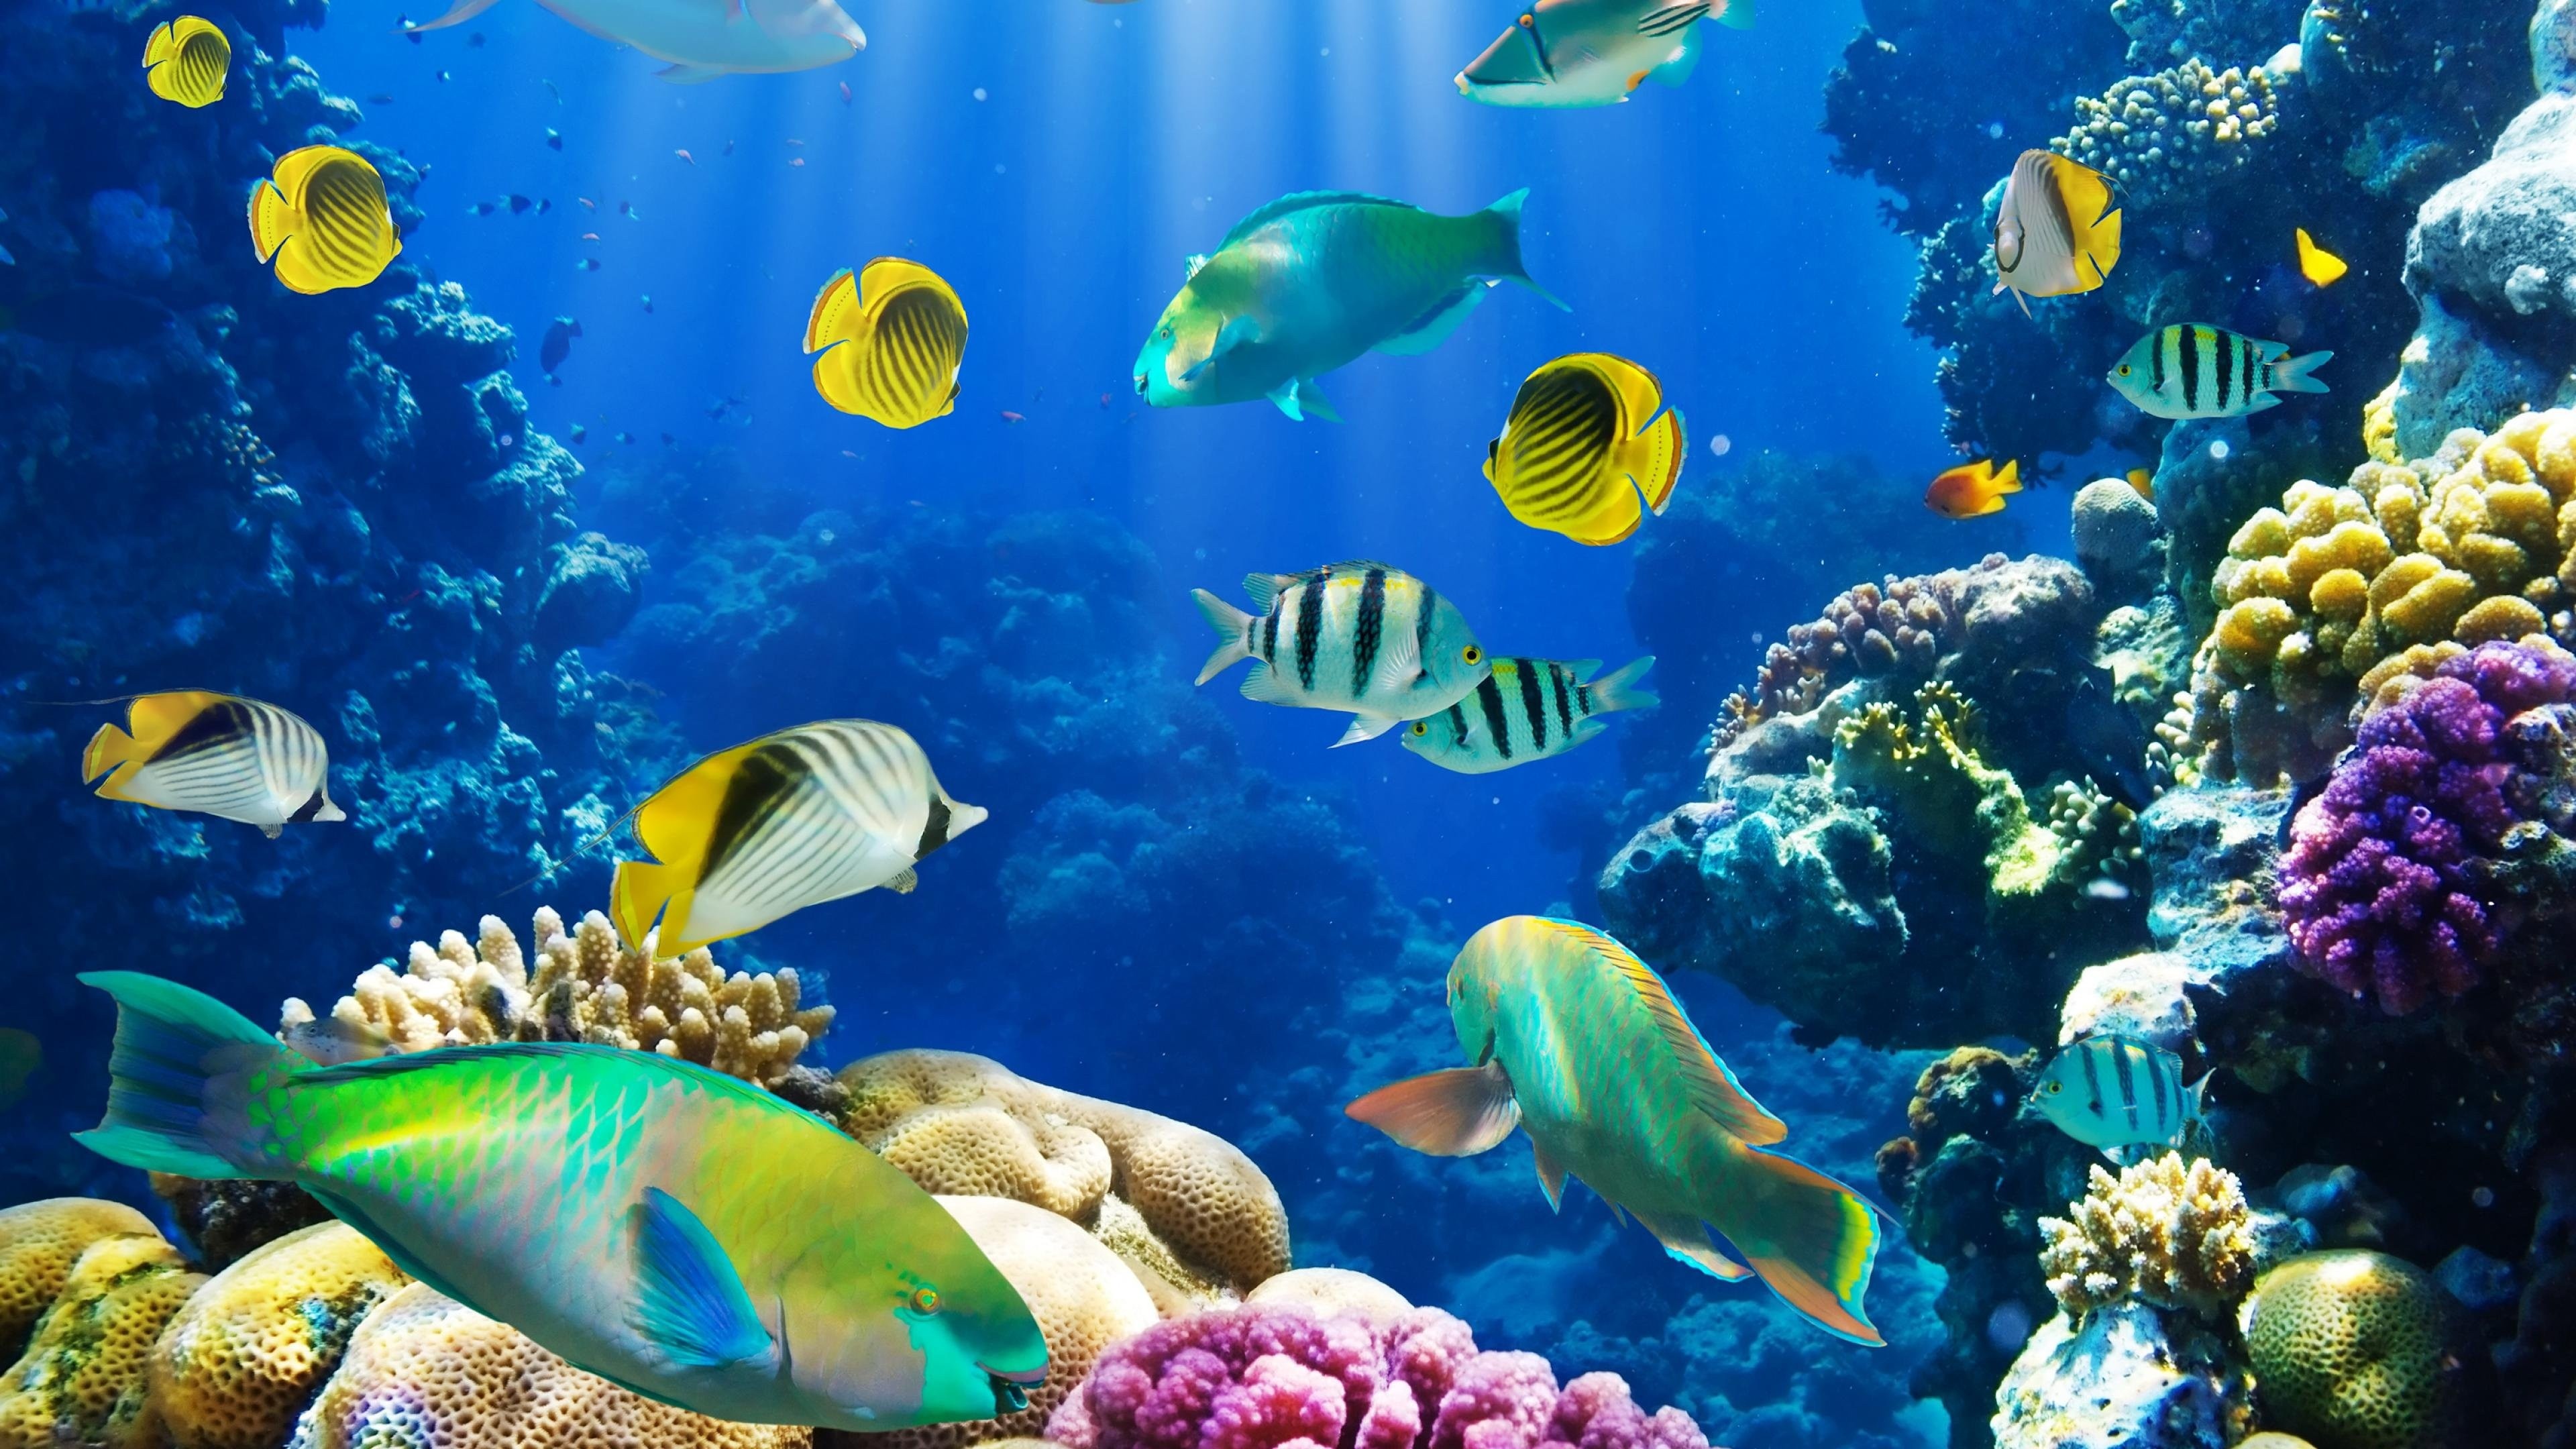 Aquarium, Live tropical wallpaper, Colorful fish, Submerged beauty, Tropical paradise, 3840x2160 4K Desktop